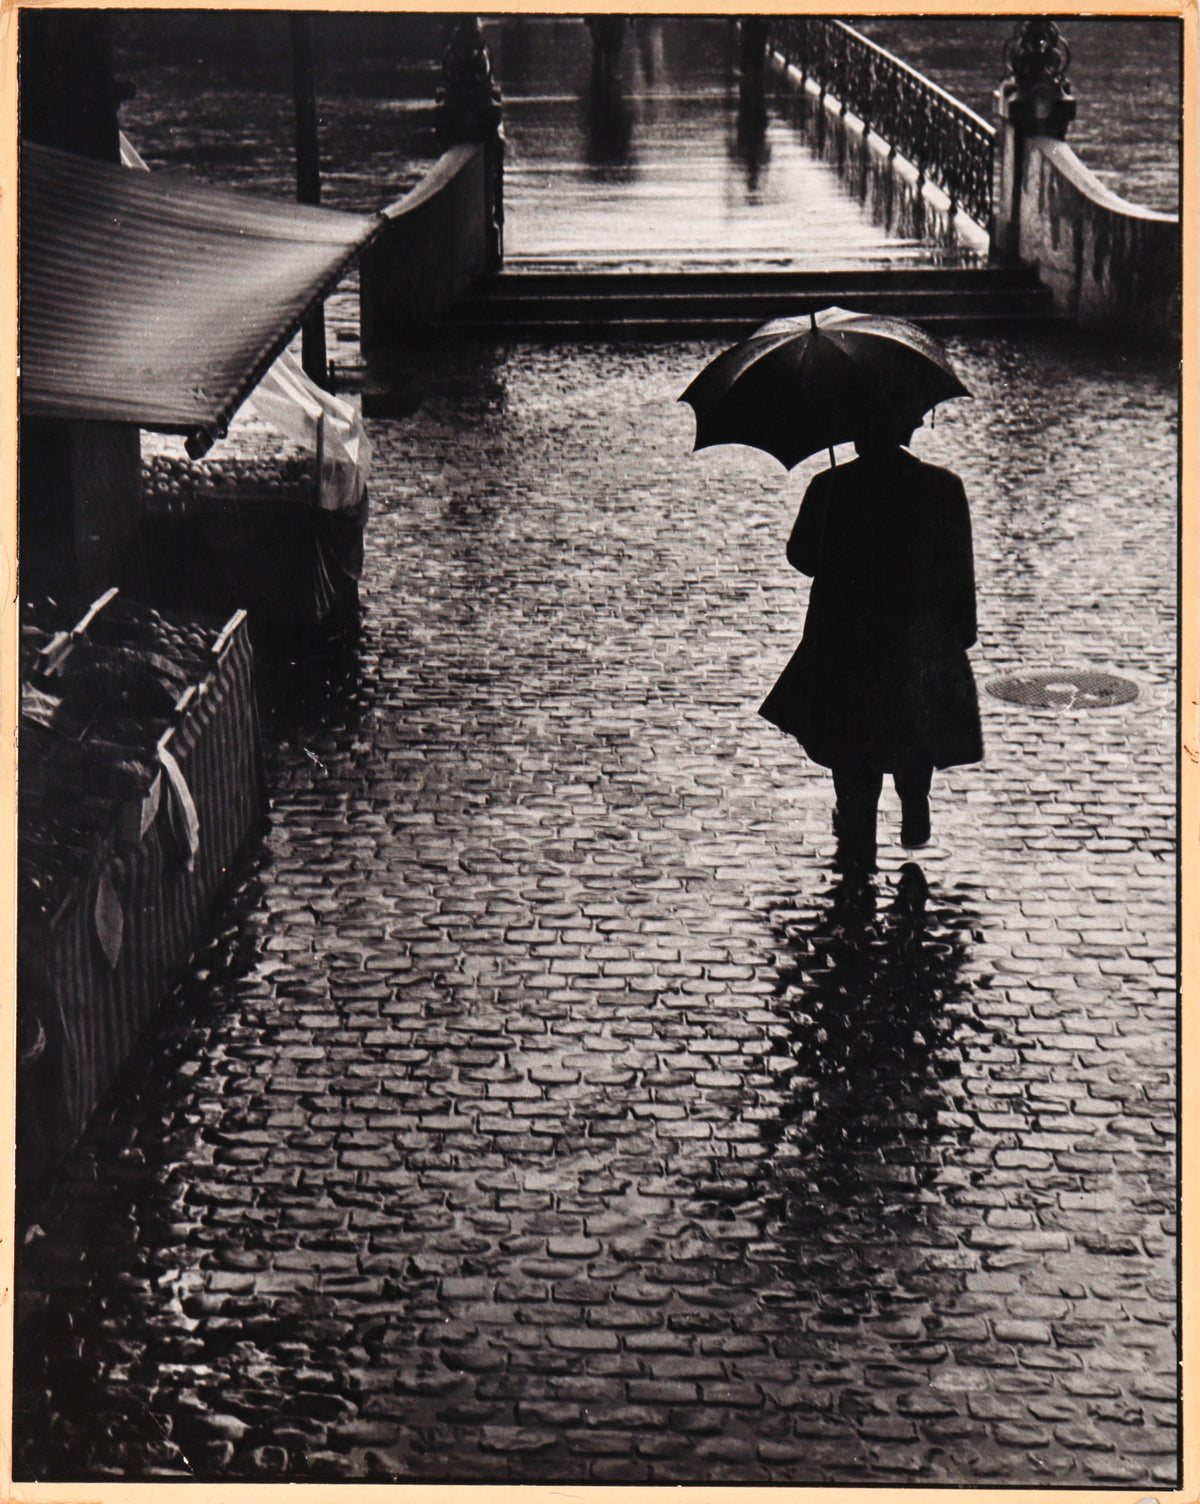 &lt;i&gt;A Rainy Afternoon&lt;/i&gt; &lt;br&gt;1983 Photograph &lt;br&gt;&lt;br&gt;#C2381